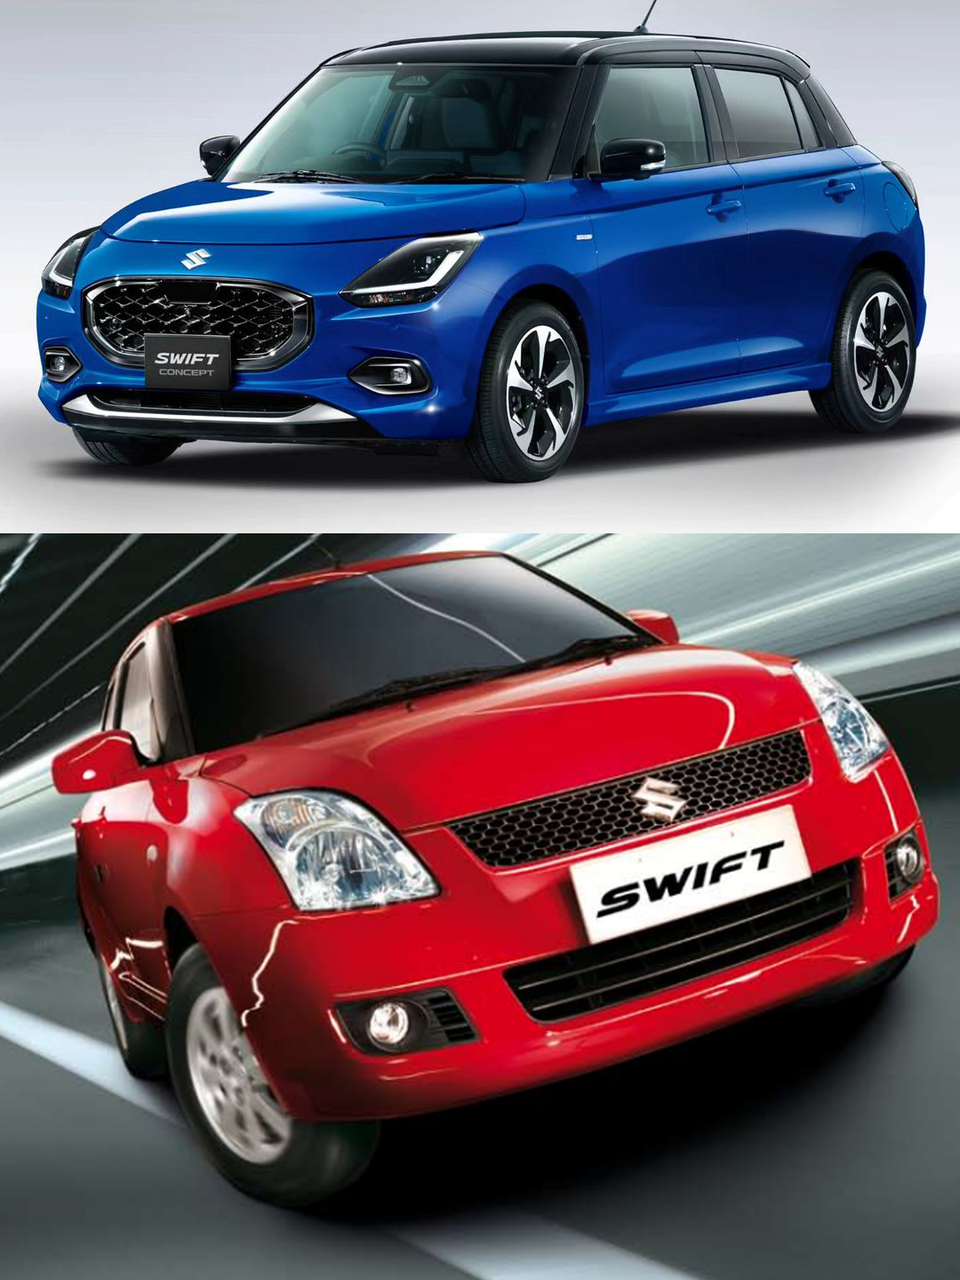 Suzuki Swift- All Generations